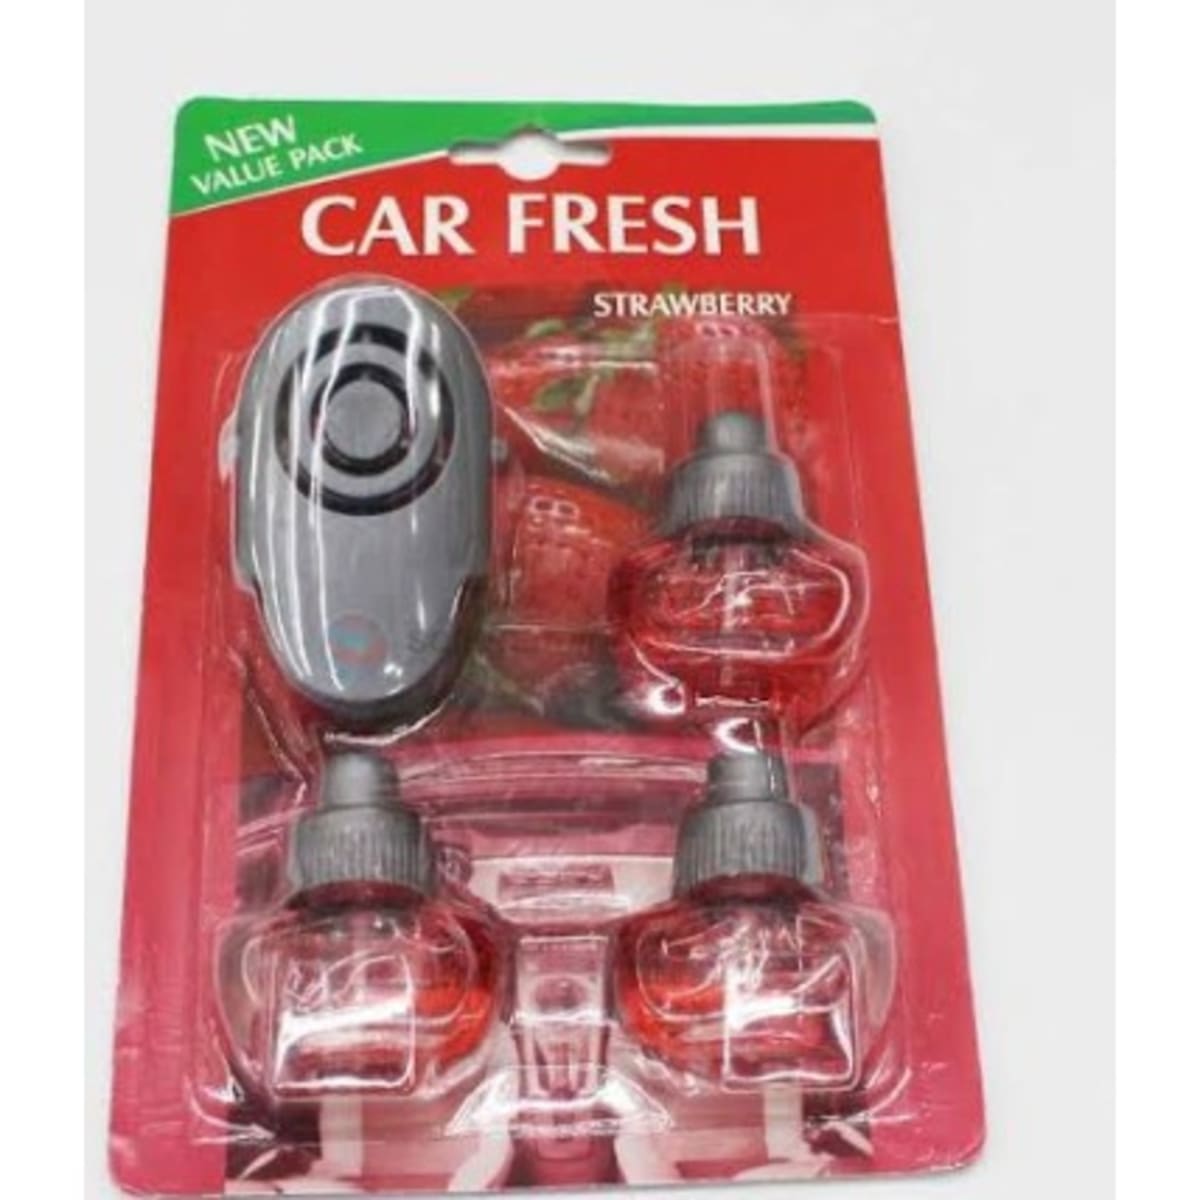 Car Air Freshener - Value Pack